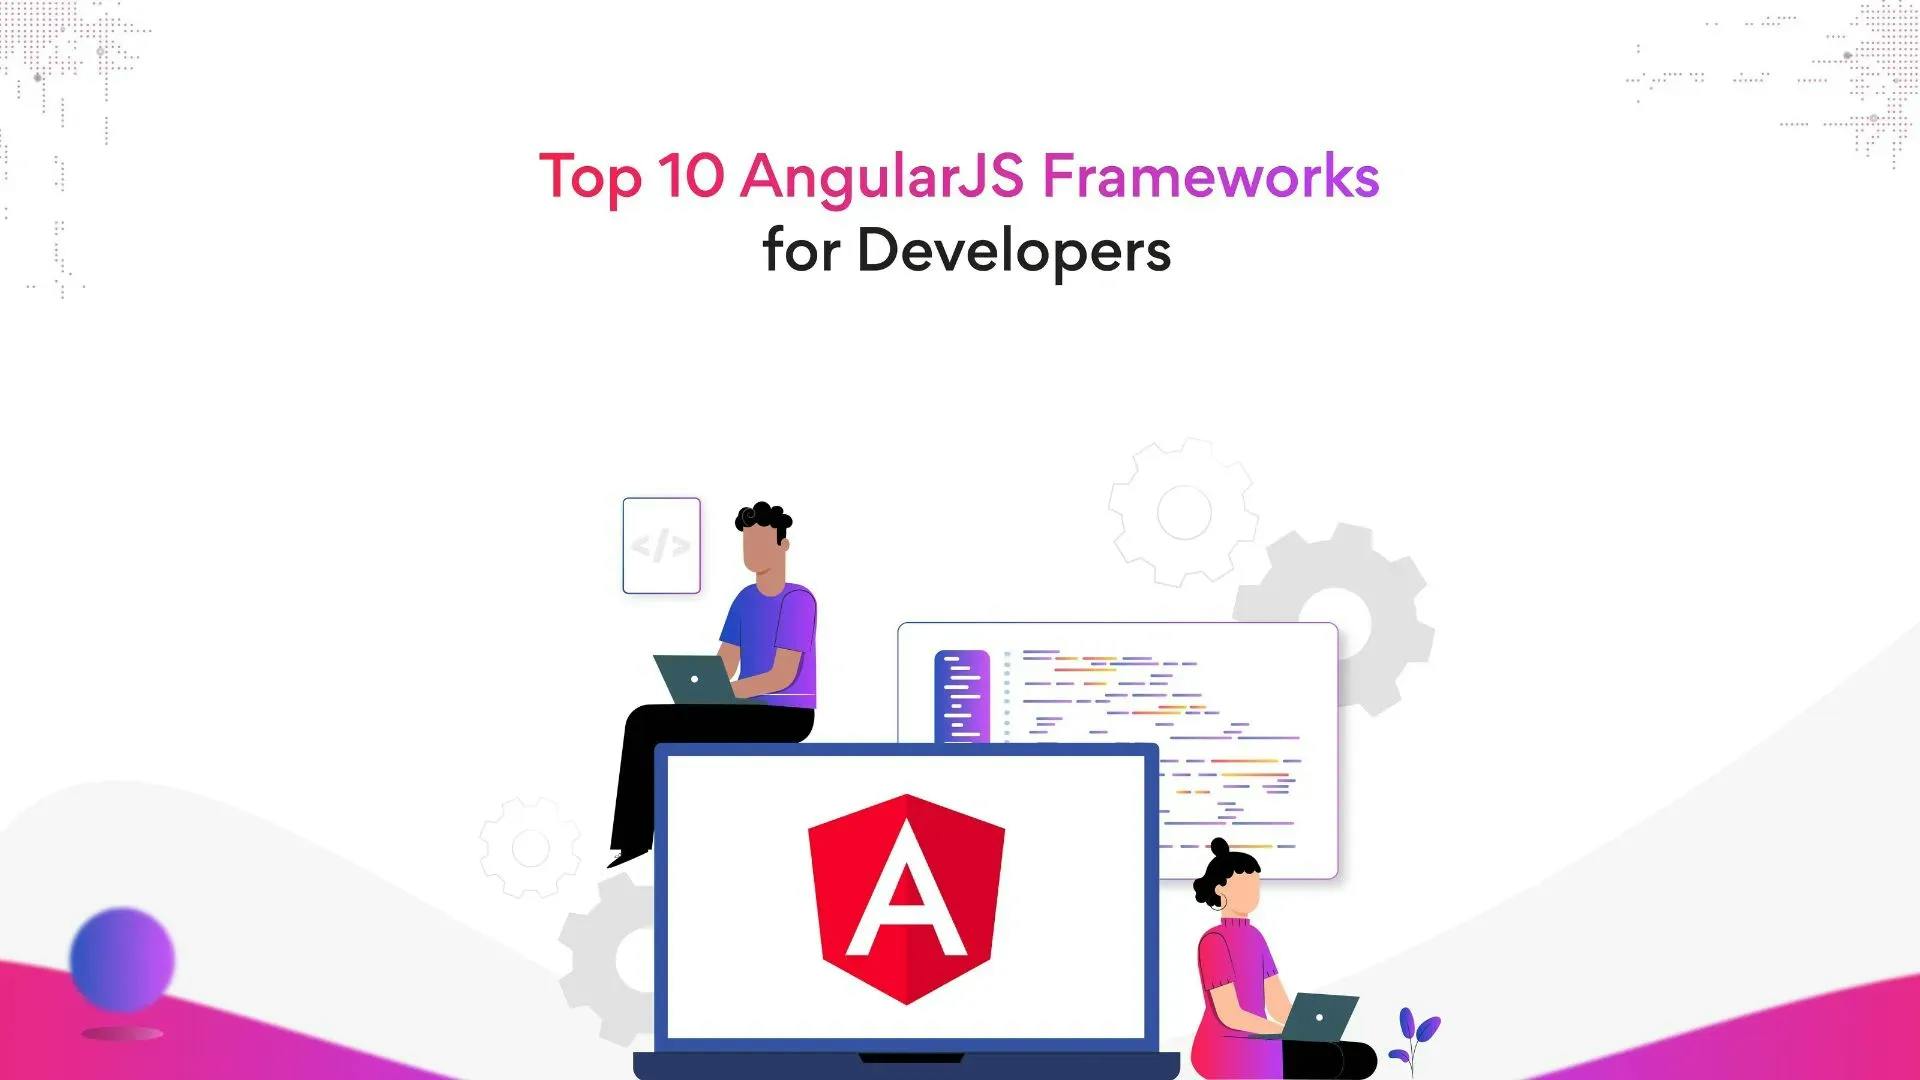 Top 10 AngularJS Frameworks for Developers